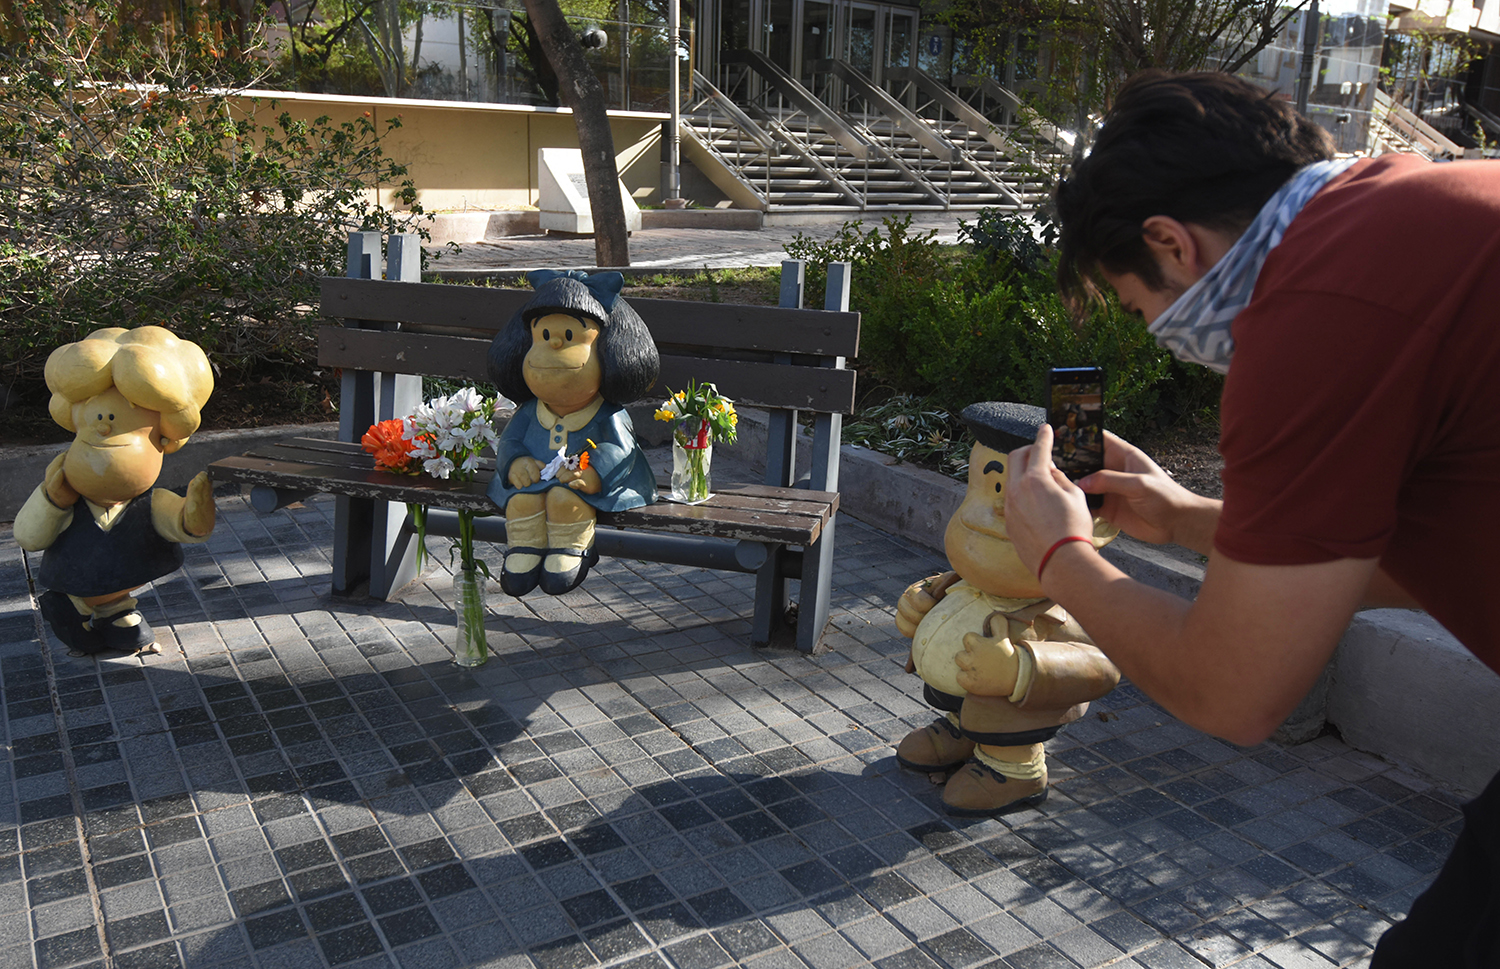 Un joven saca fotos a las esculturas de los personajes creados por Quino.